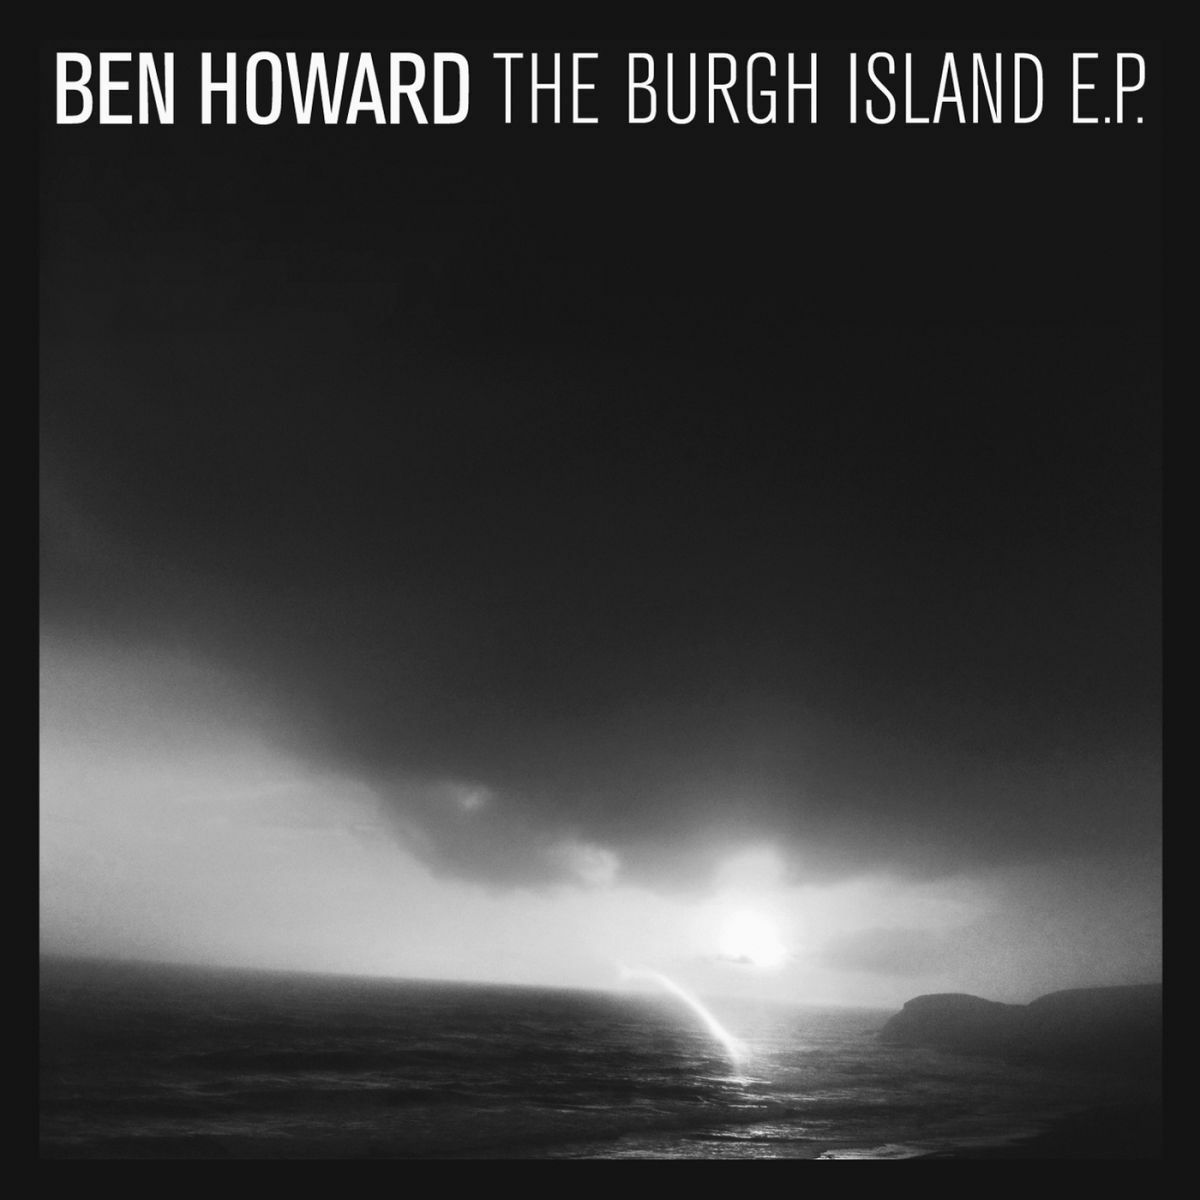 Ben Howard: albums, songs, playlists | Listen on Deezer